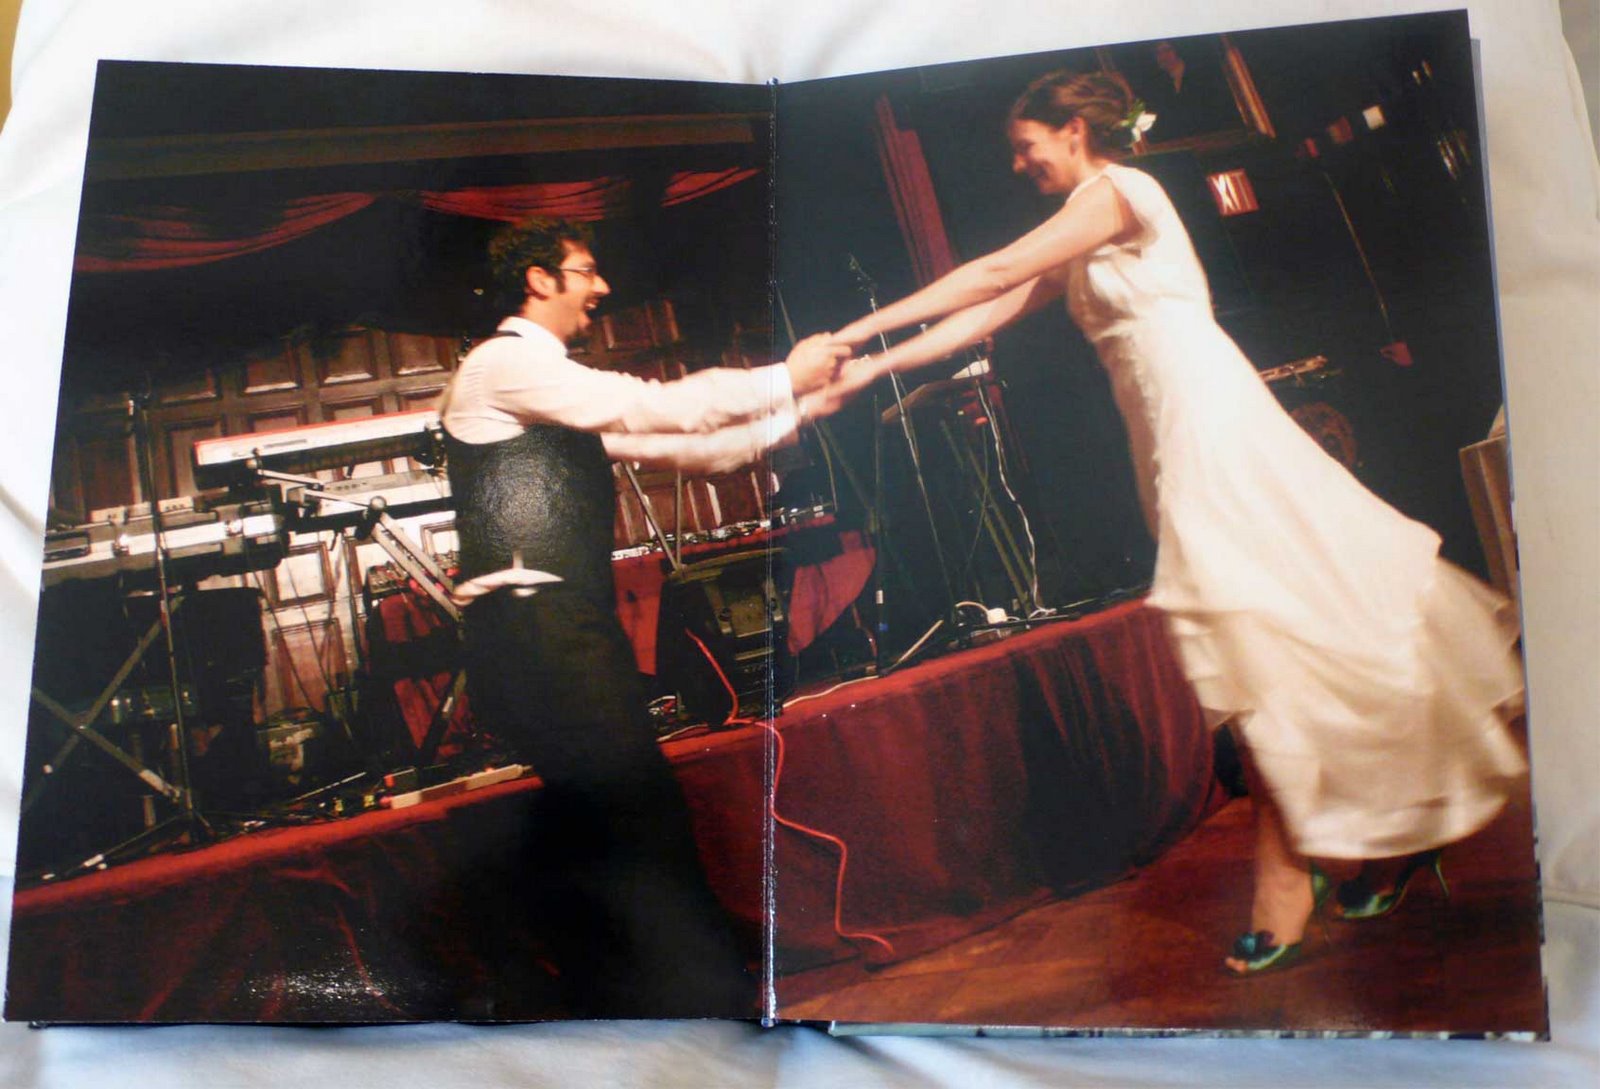 [dancing-bride-and-groom-page.jpg]